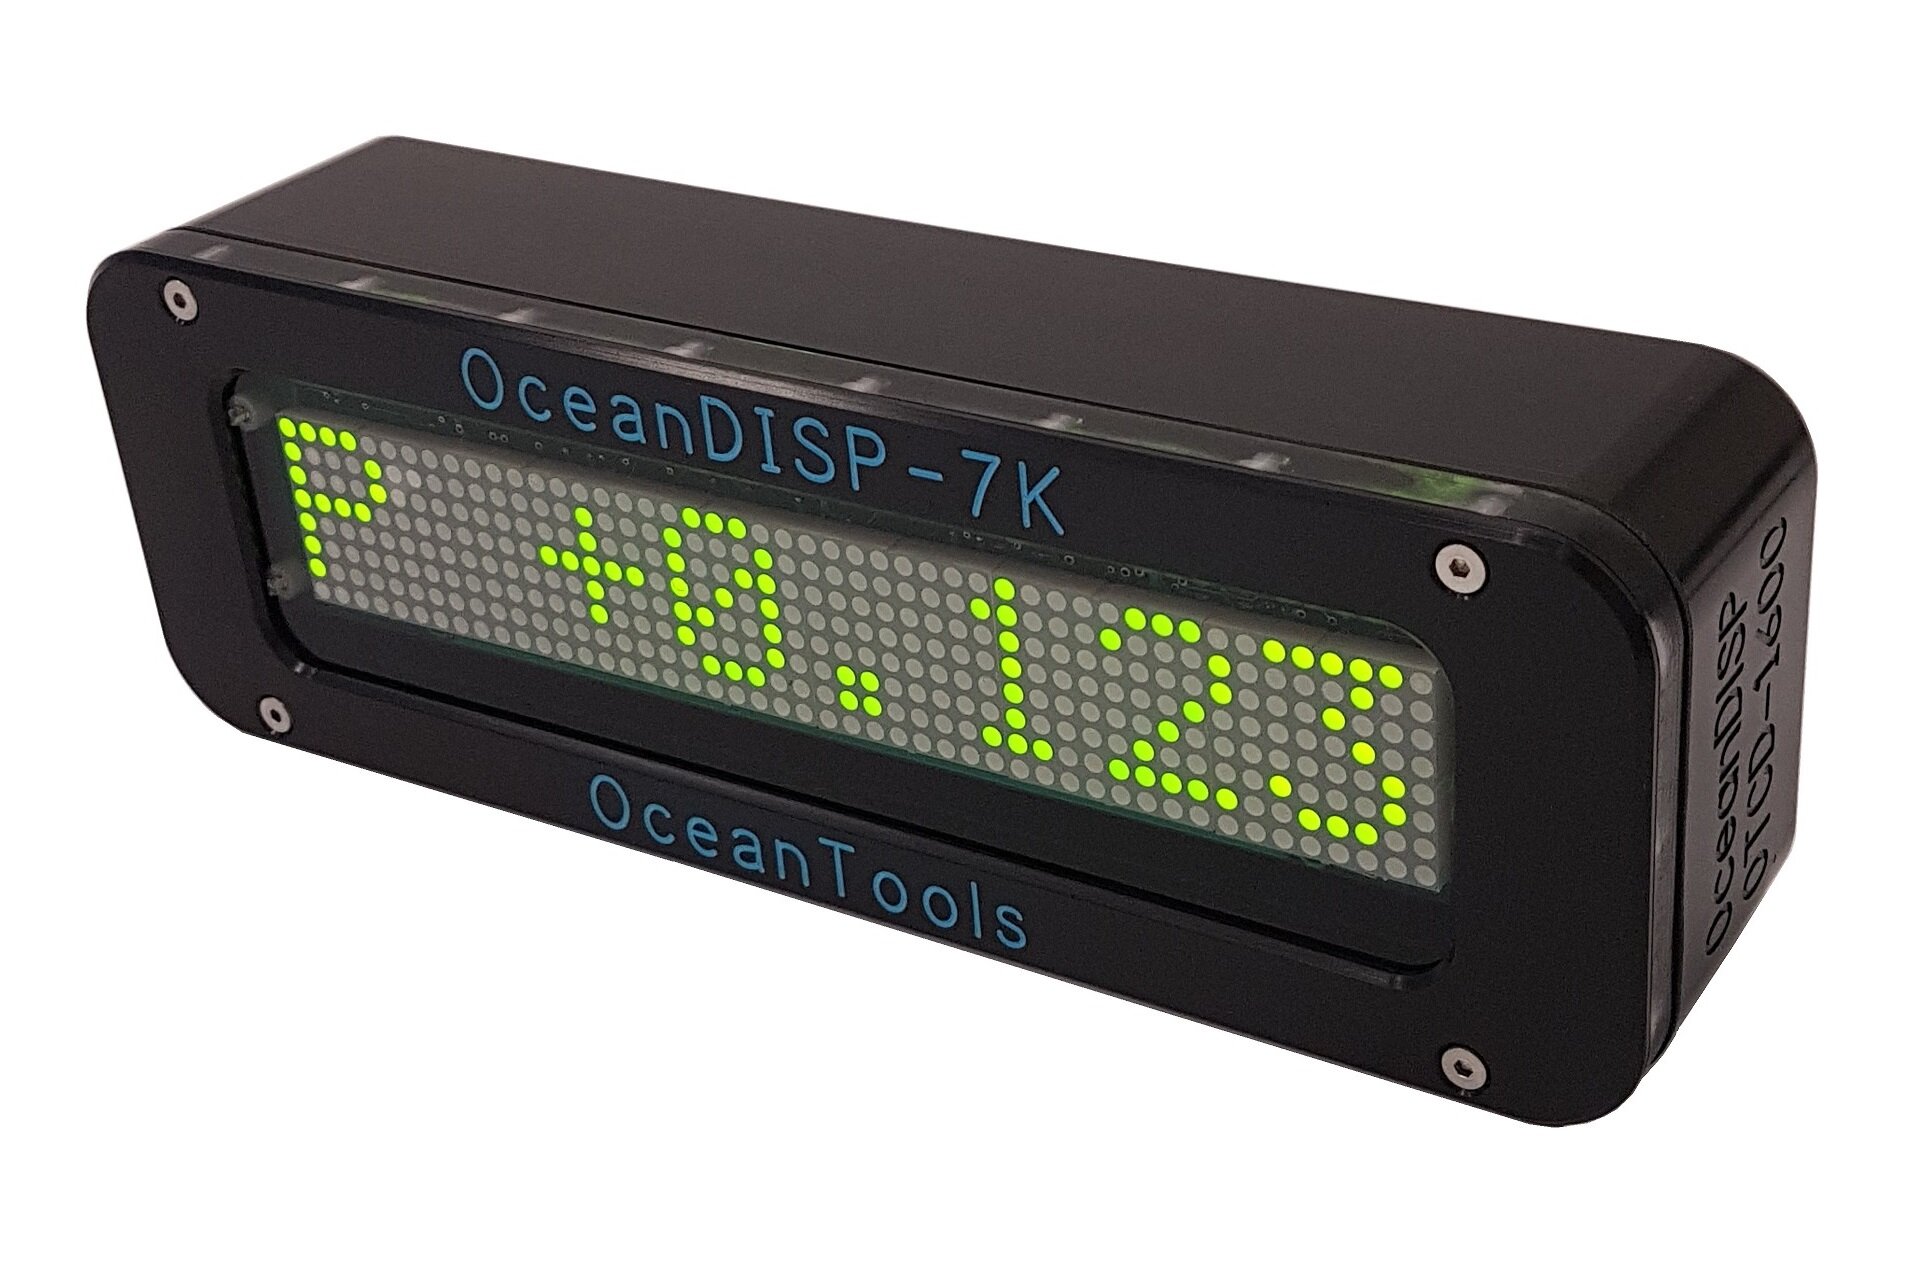 OceanDISP-7K Deep Display